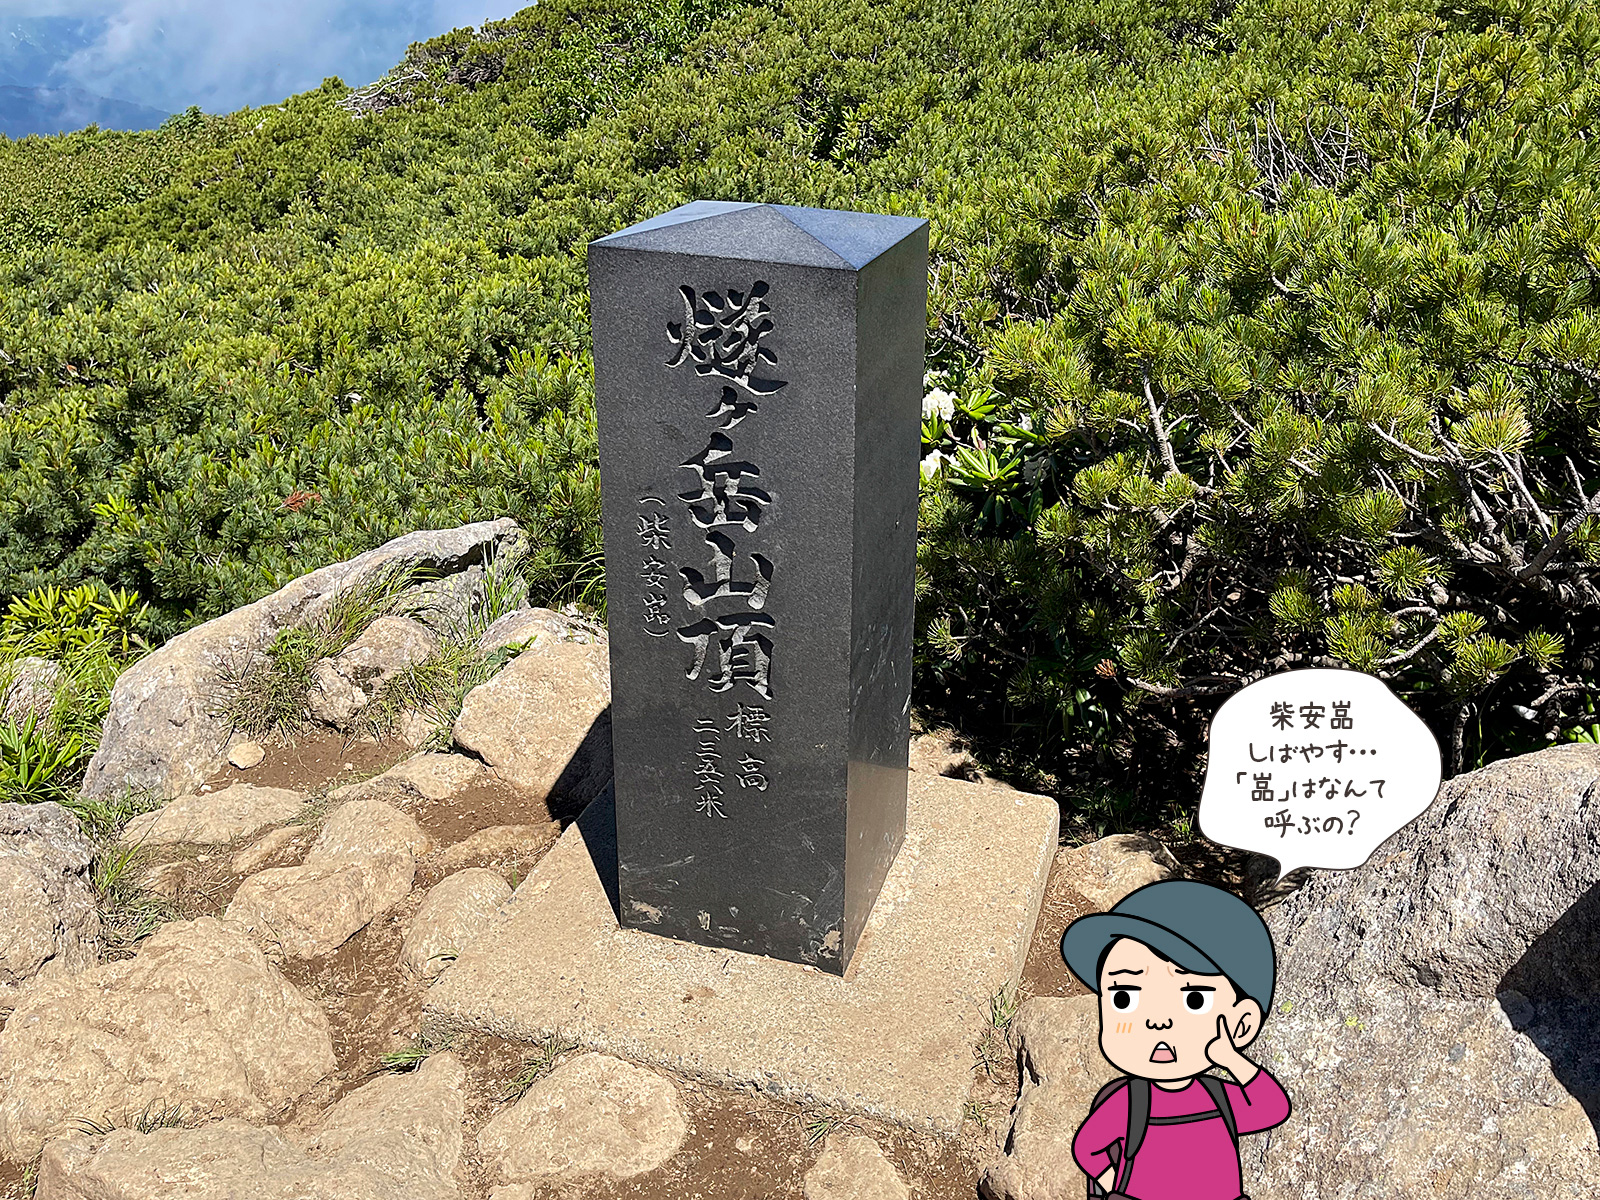 柴安嵓という漢字が読めない写真と登山者のイラスト